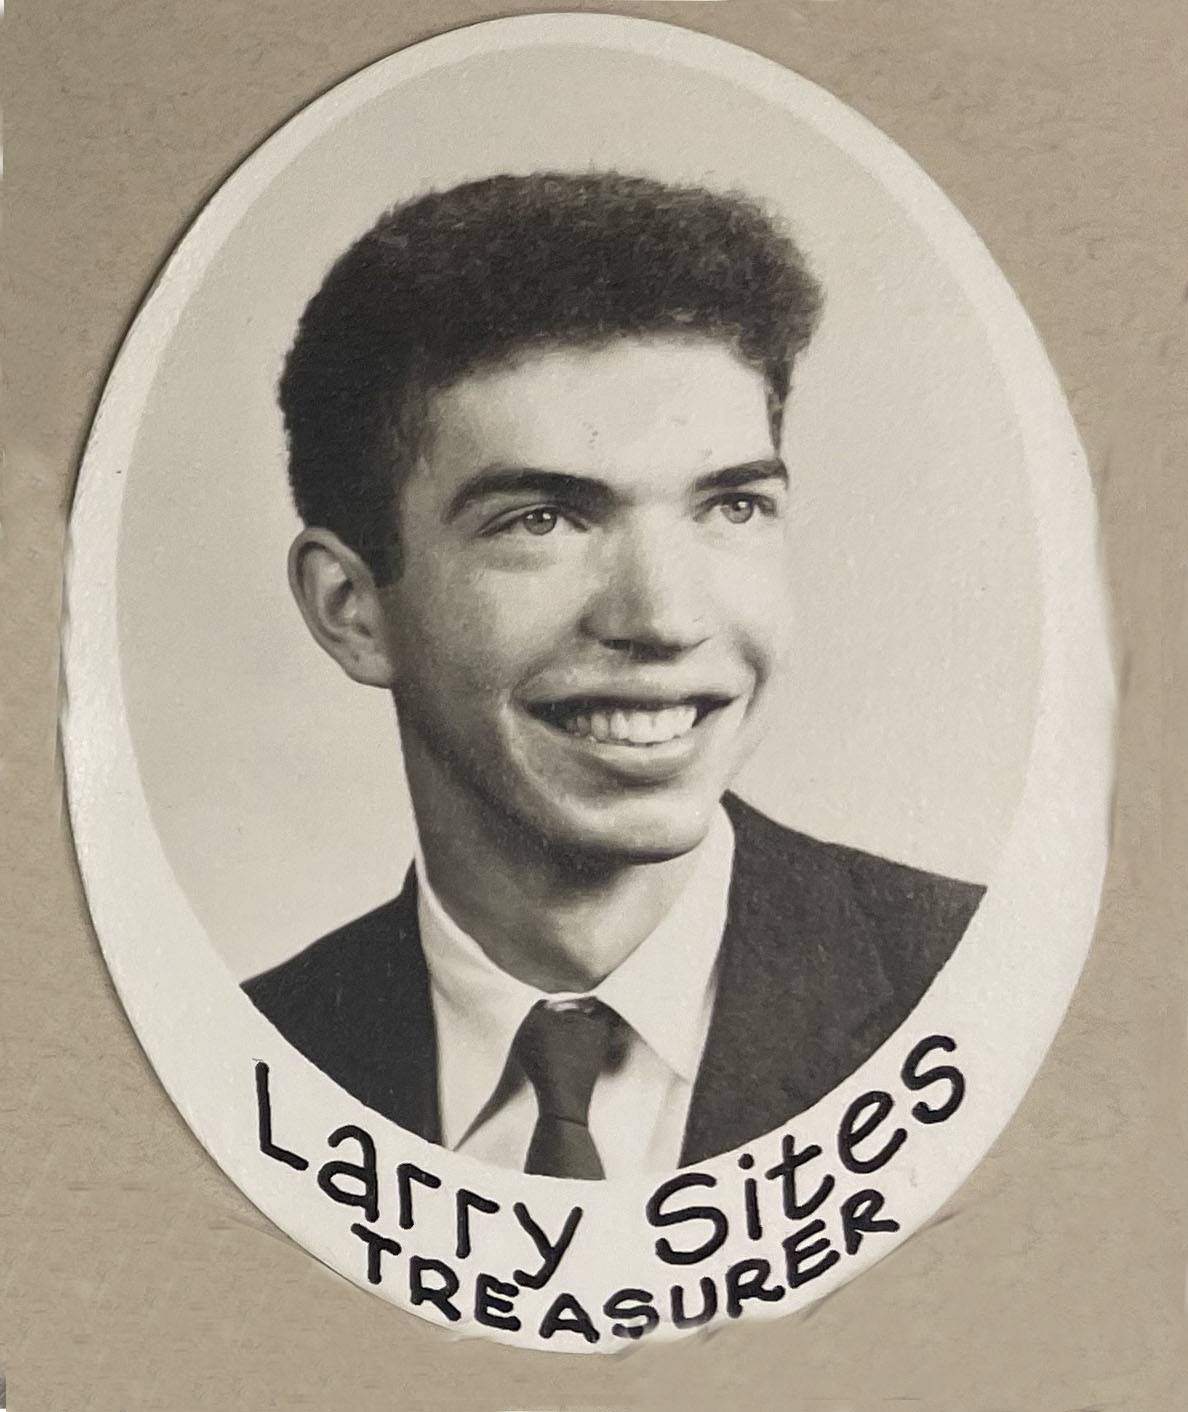 Larry Sites